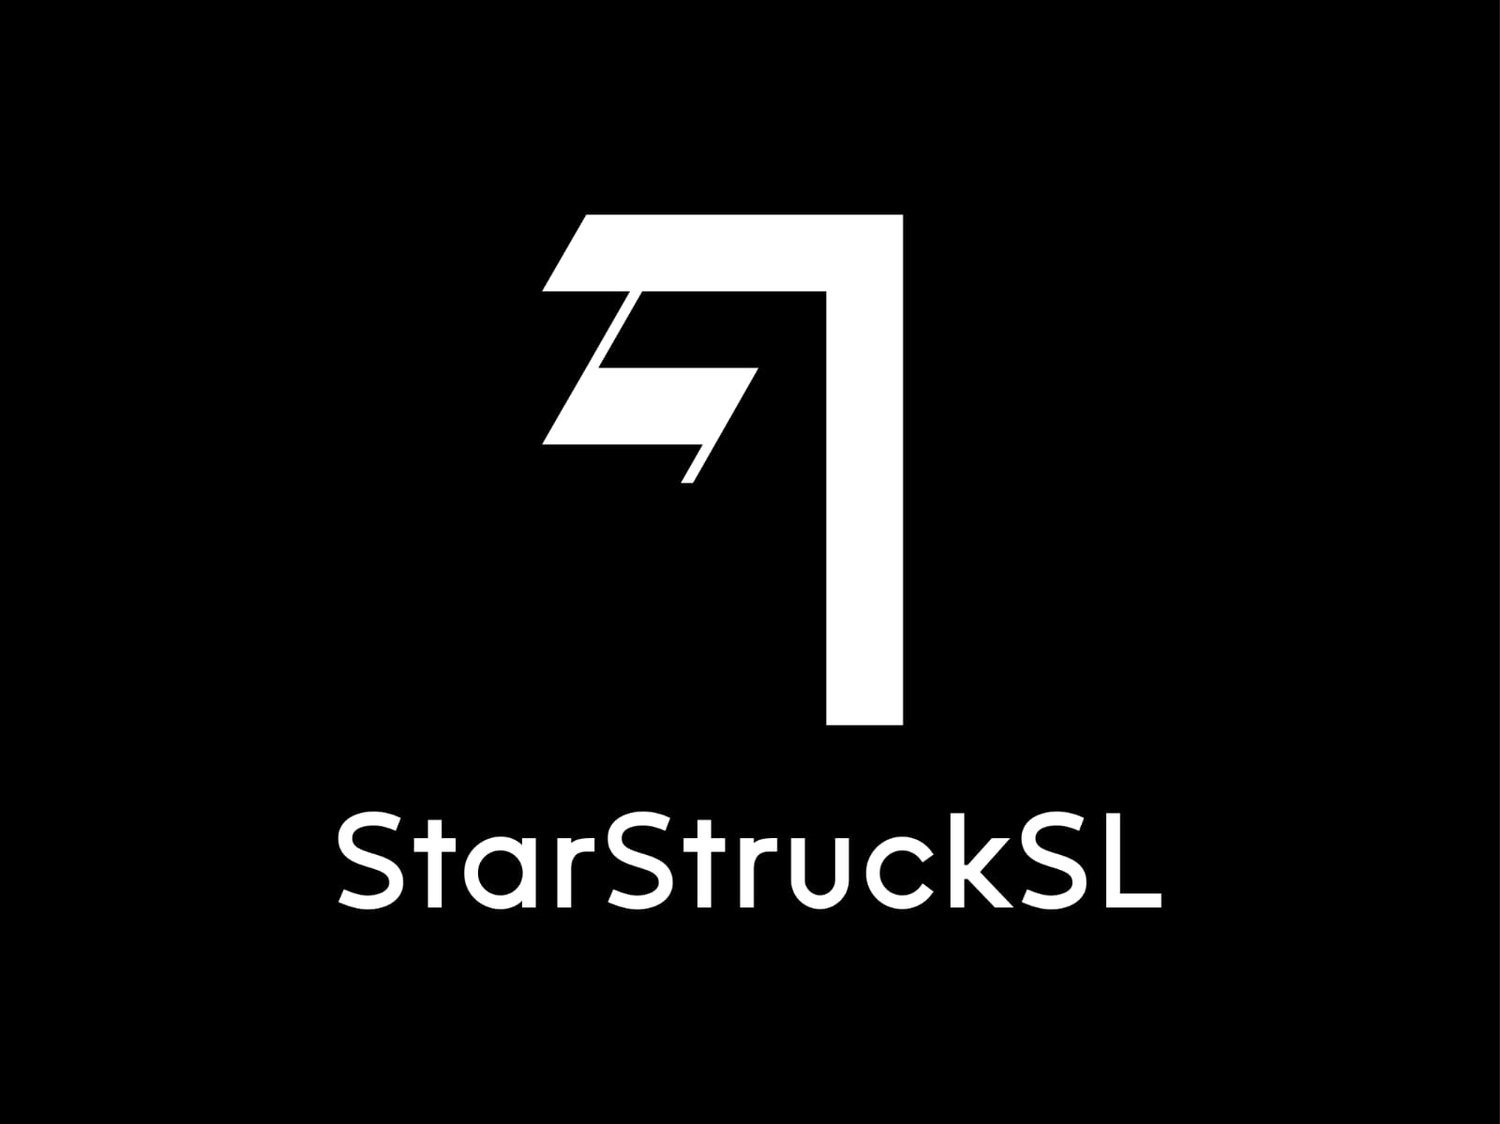 Starstrucksl